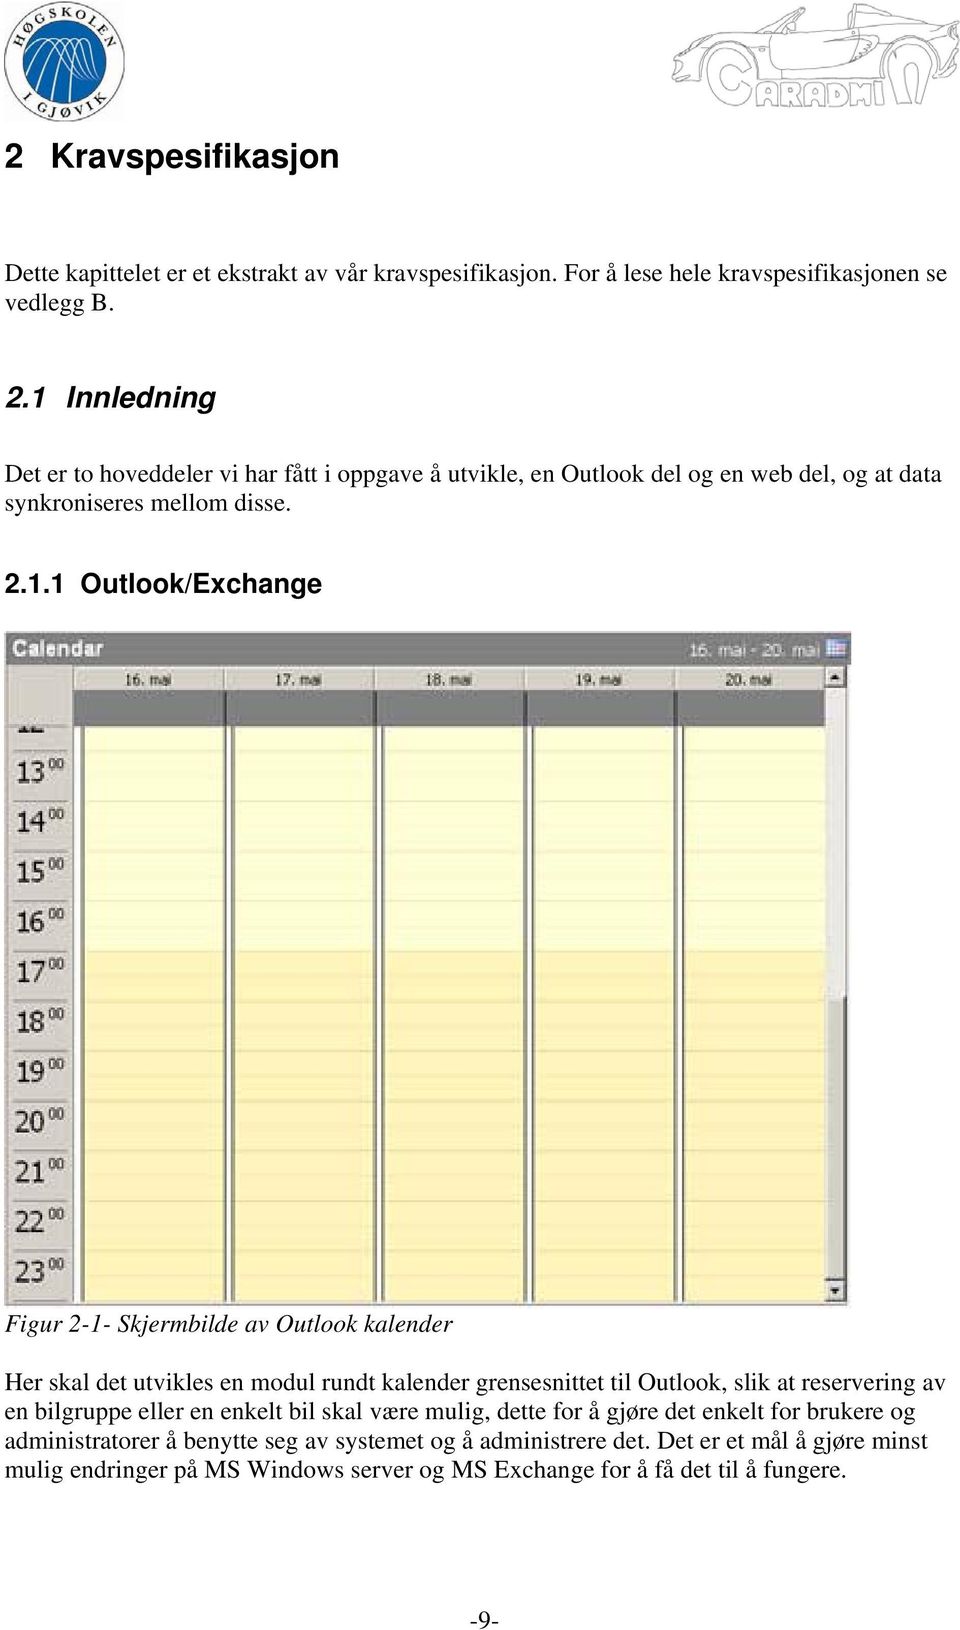 Skjermbilde av Outlook kalender Her skal det utvikles en modul rundt kalender grensesnittet til Outlook, slik at reservering av en bilgruppe eller en enkelt bil skal være